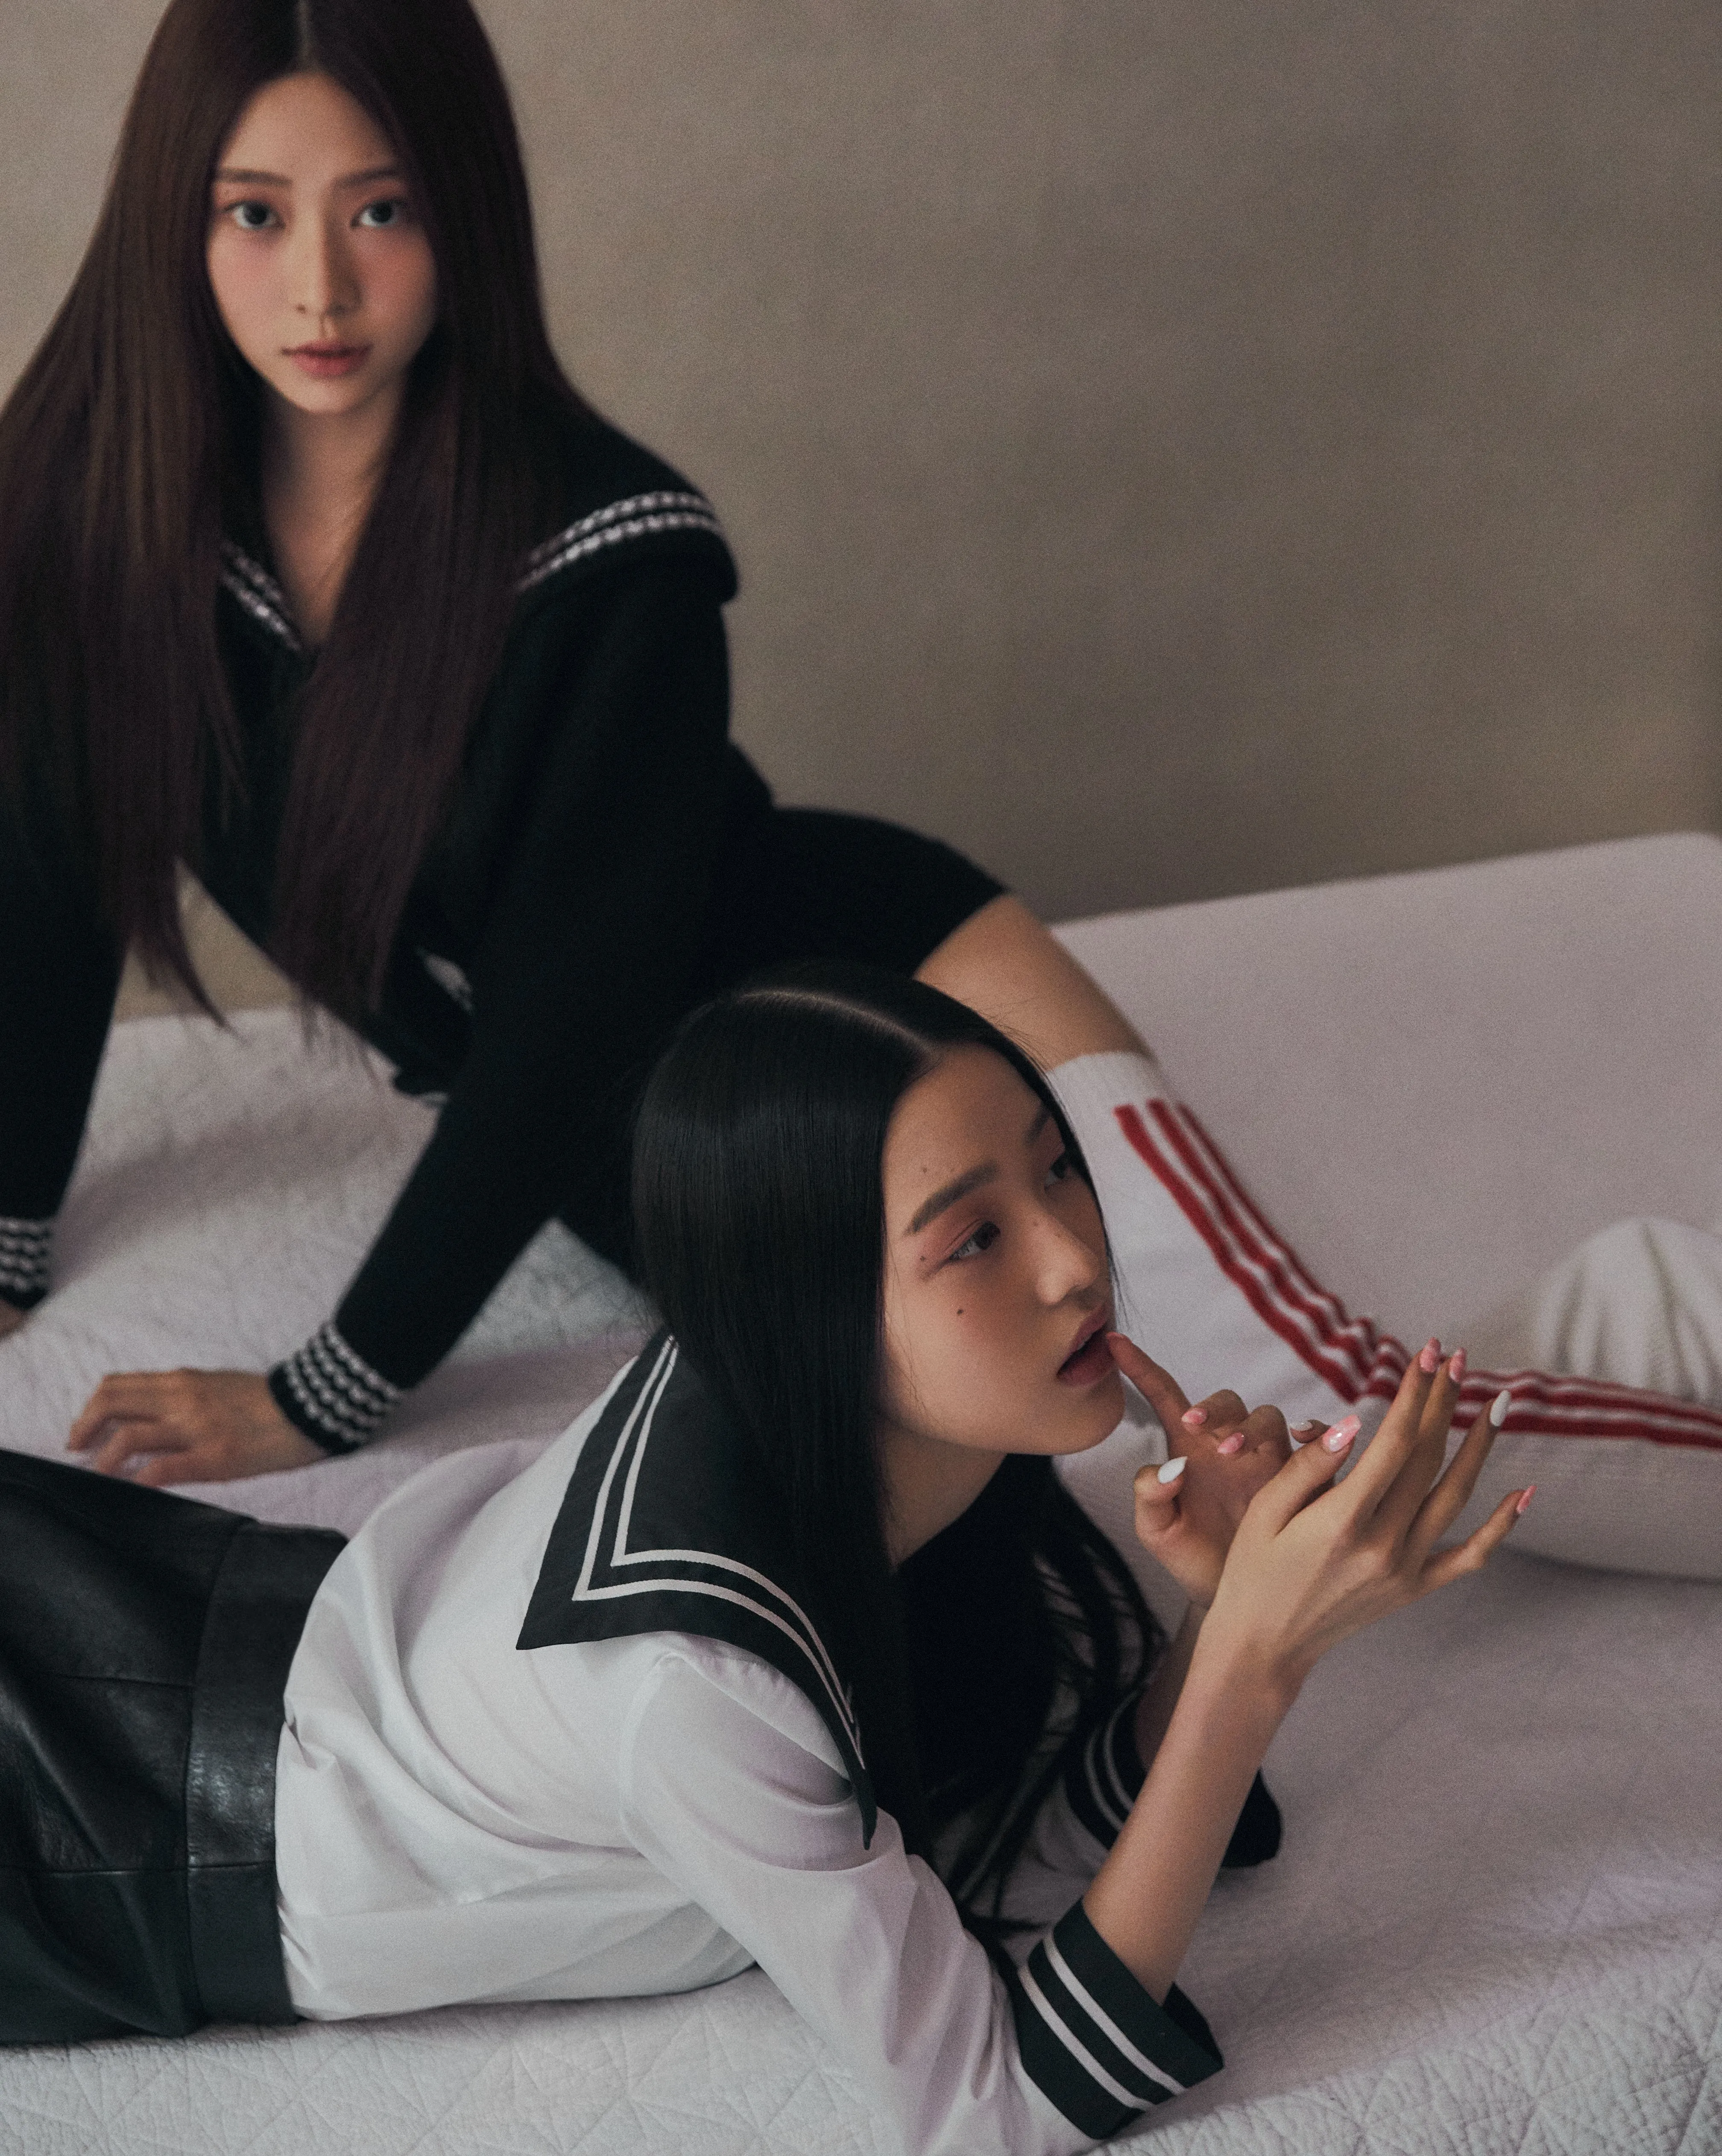 PHOTOSHOOT - IZ*ONE's Minju & Wonyoung for VOGUE KOREA October Issue